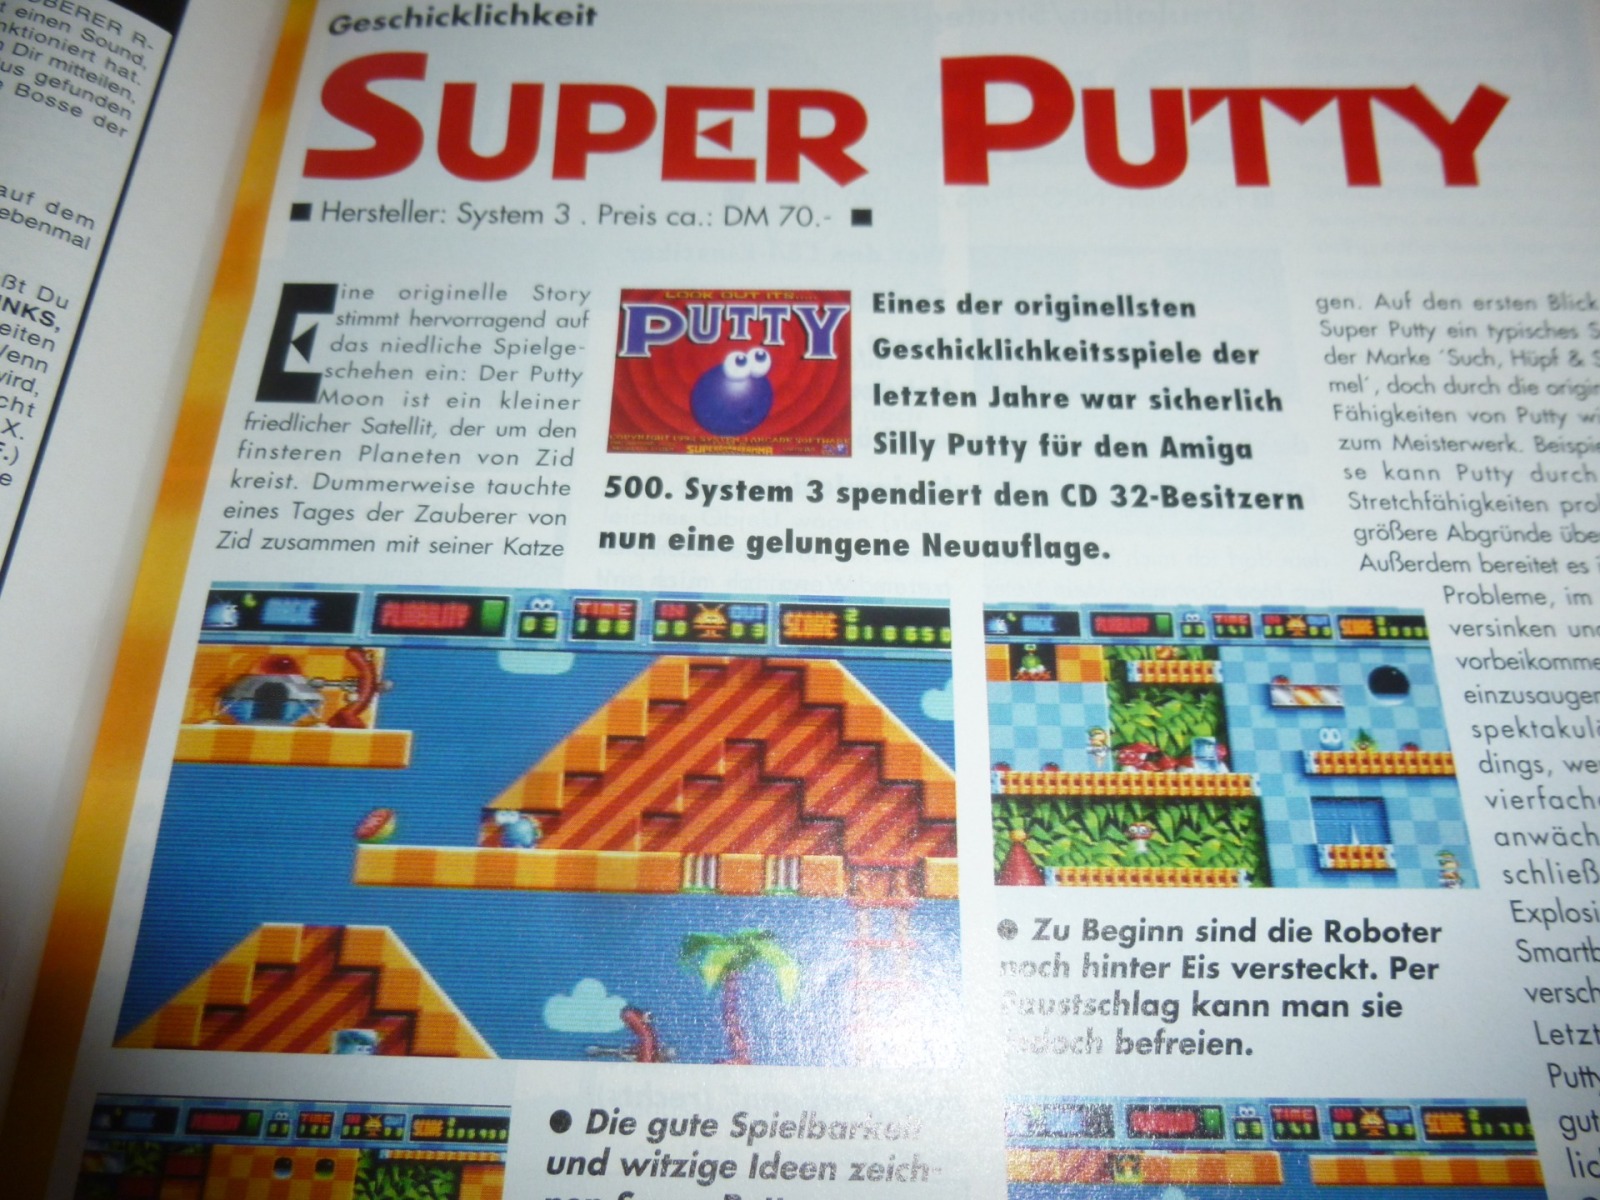 Play Time - Das Computer- und Videospiele-Magazin - Ausgabe 5/94 1994 15